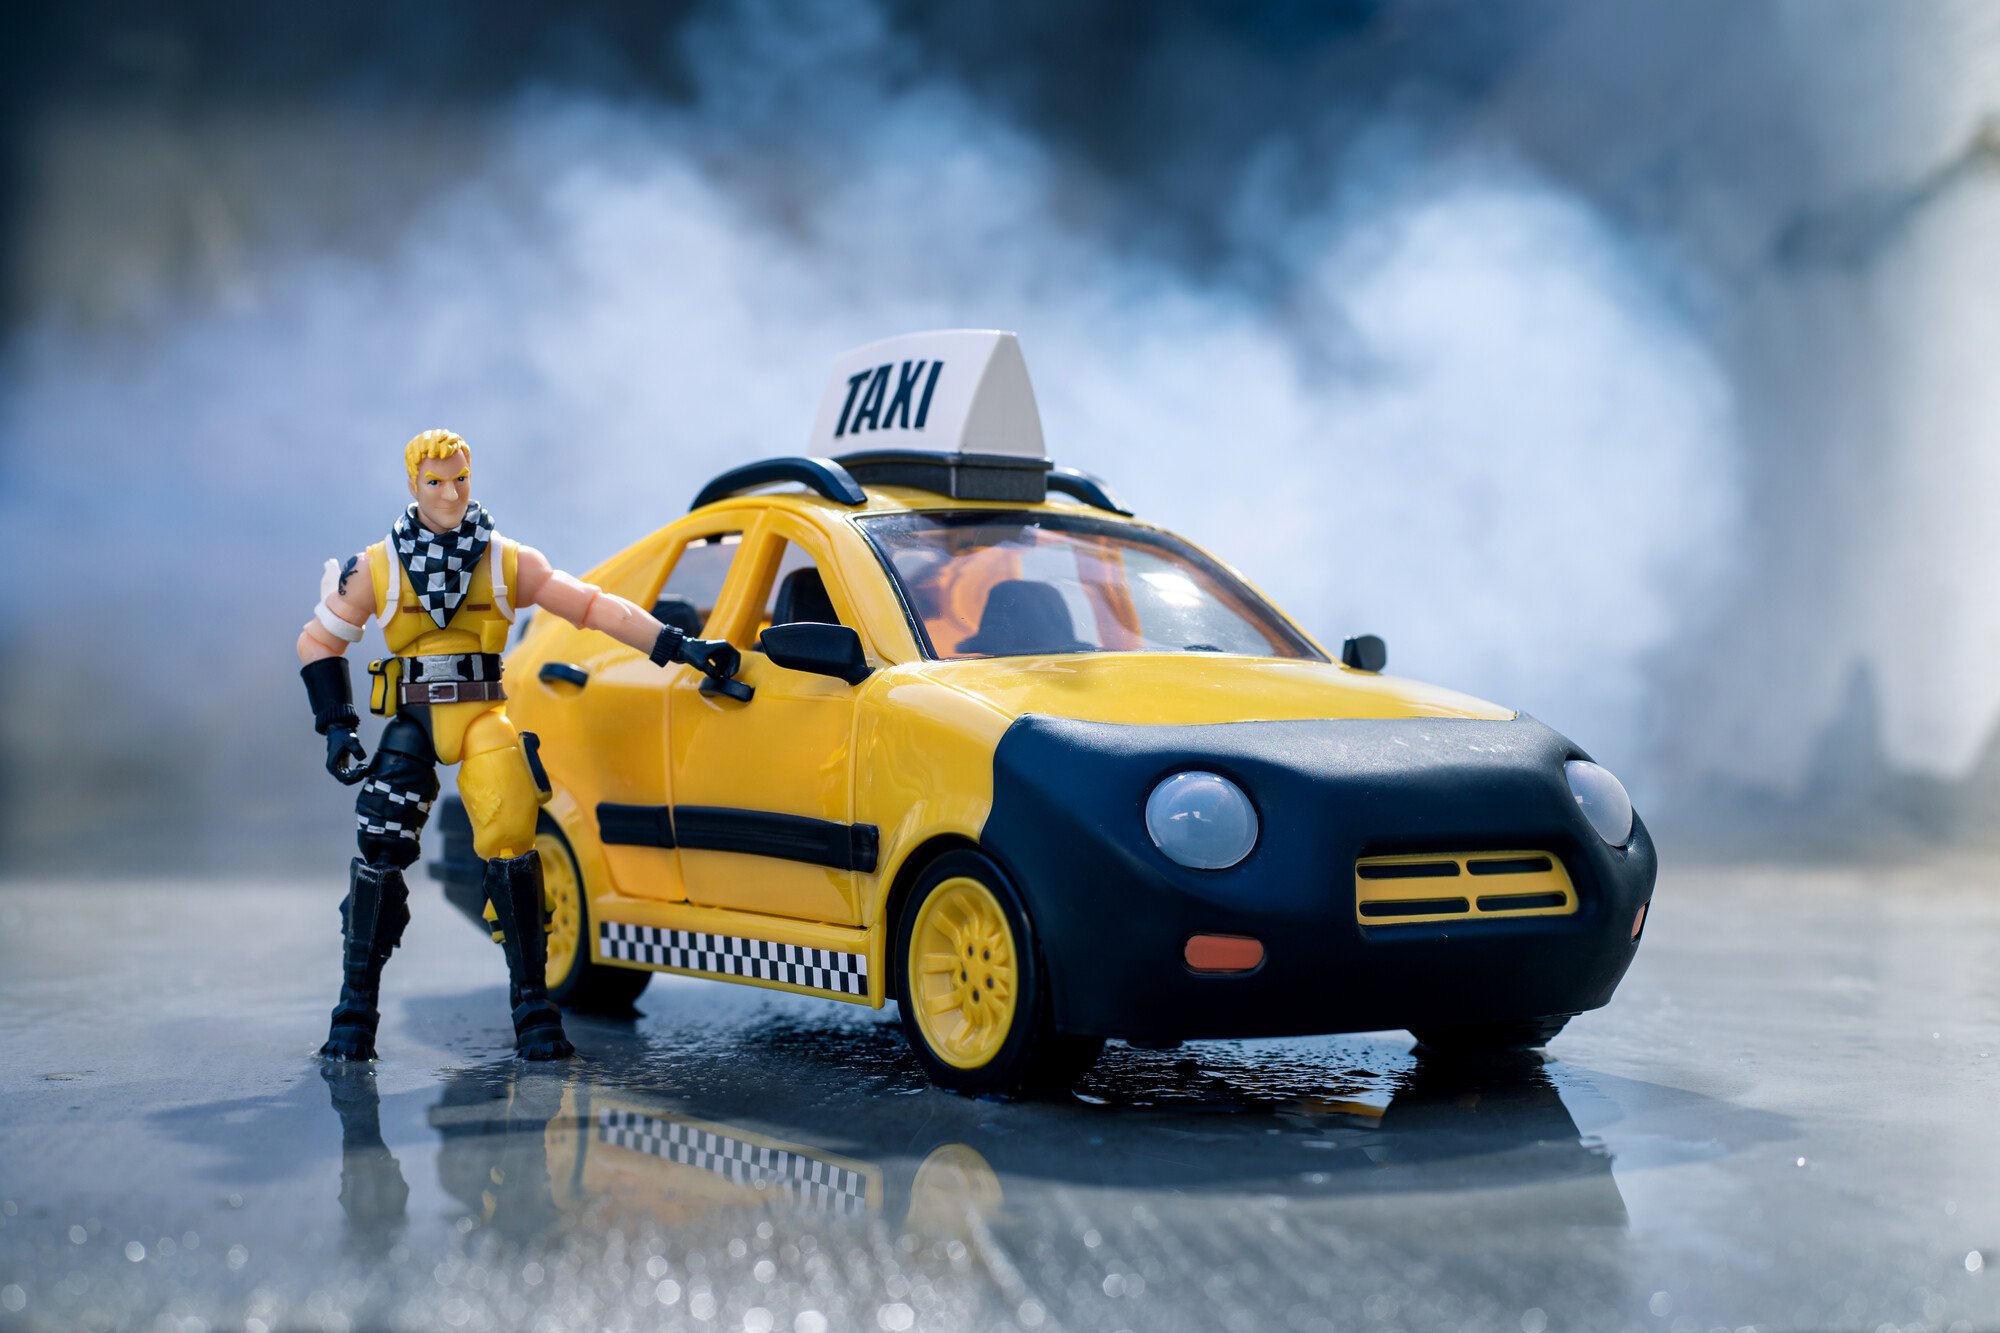 Ігровий набір Jazwares Fortnite Joy Ride Vehicle Taxi Cab, автомобіль і фігурка (FNT0817) - фото 13